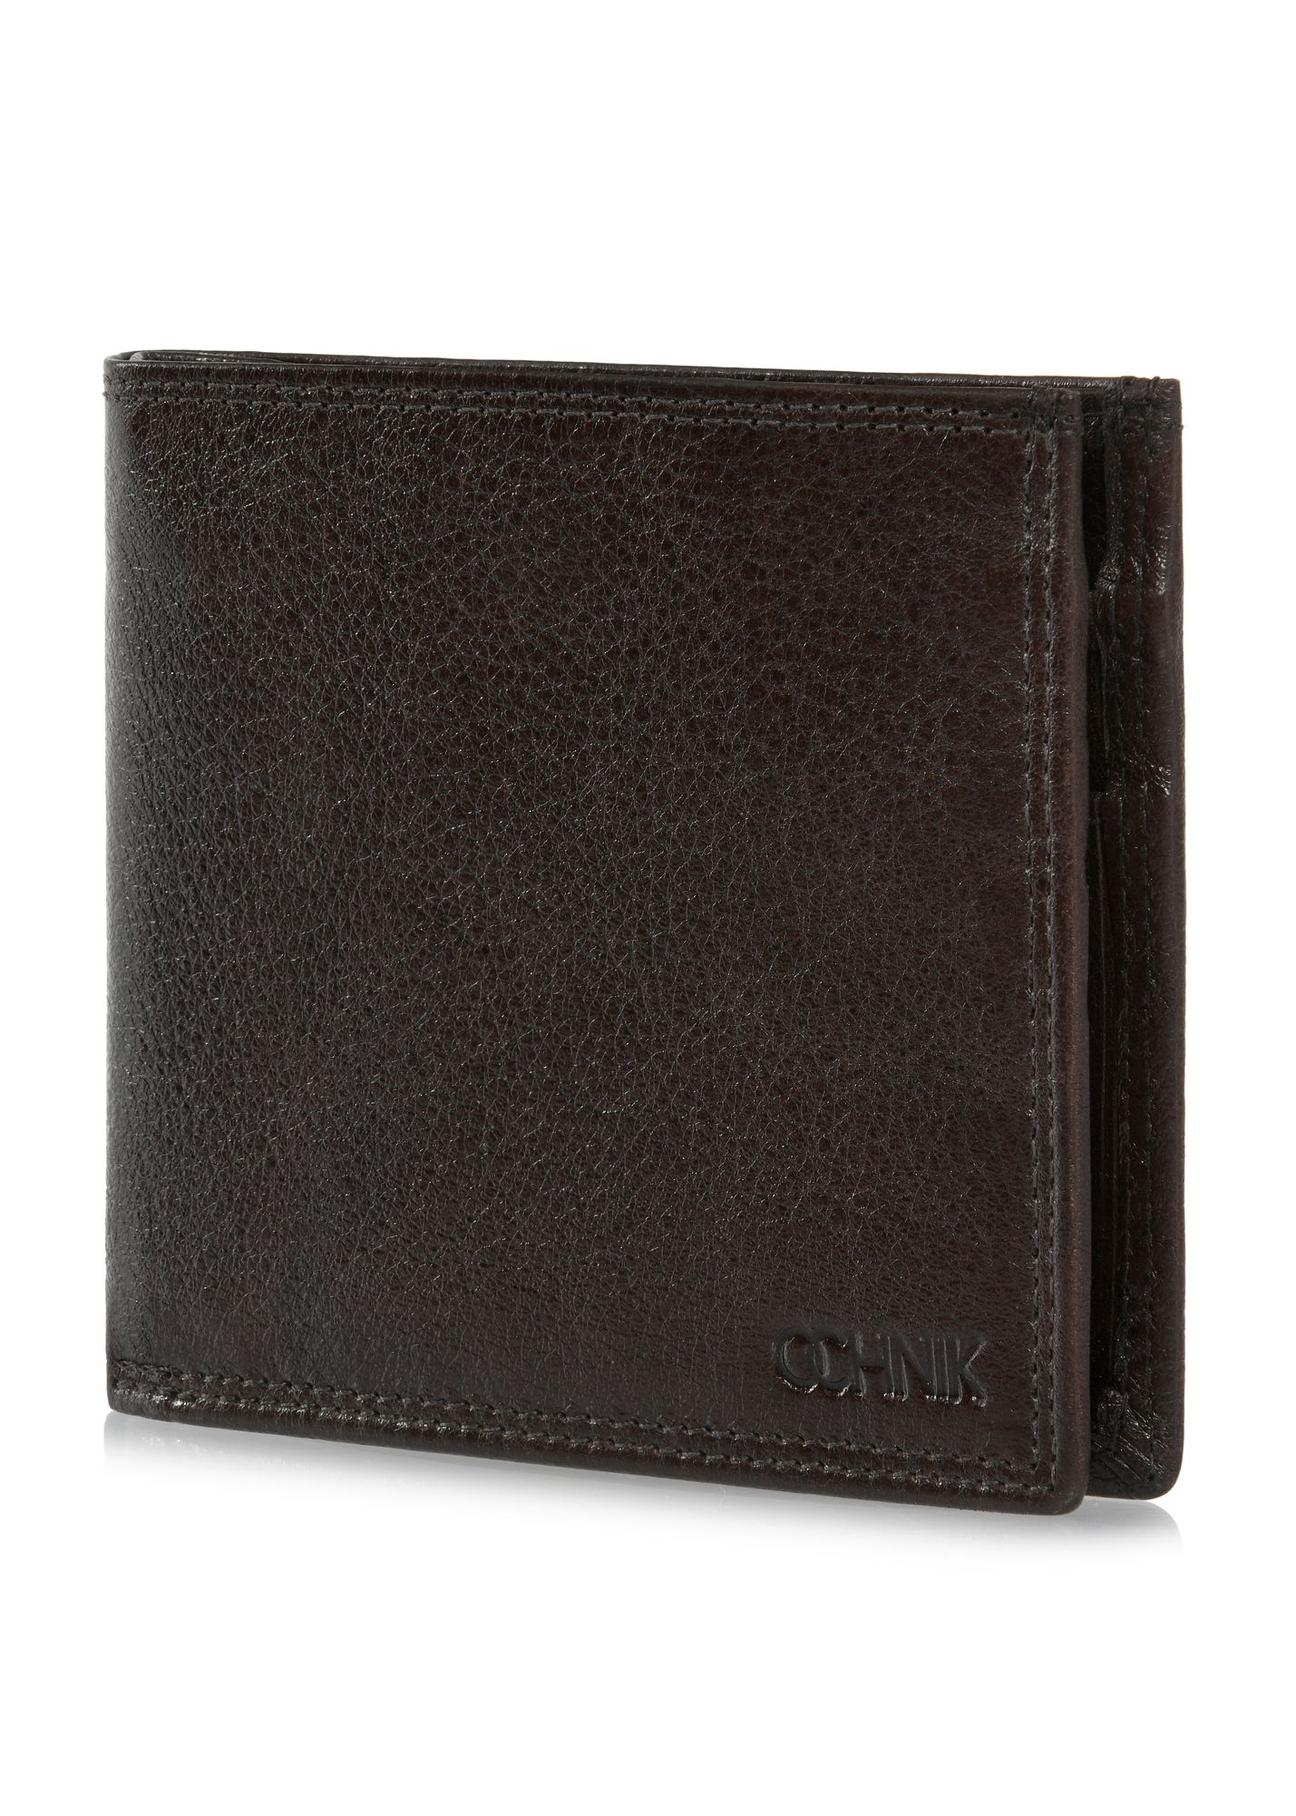 Niezapinany brązowy skórzany portfel męski PORMS-0551-89(W24)